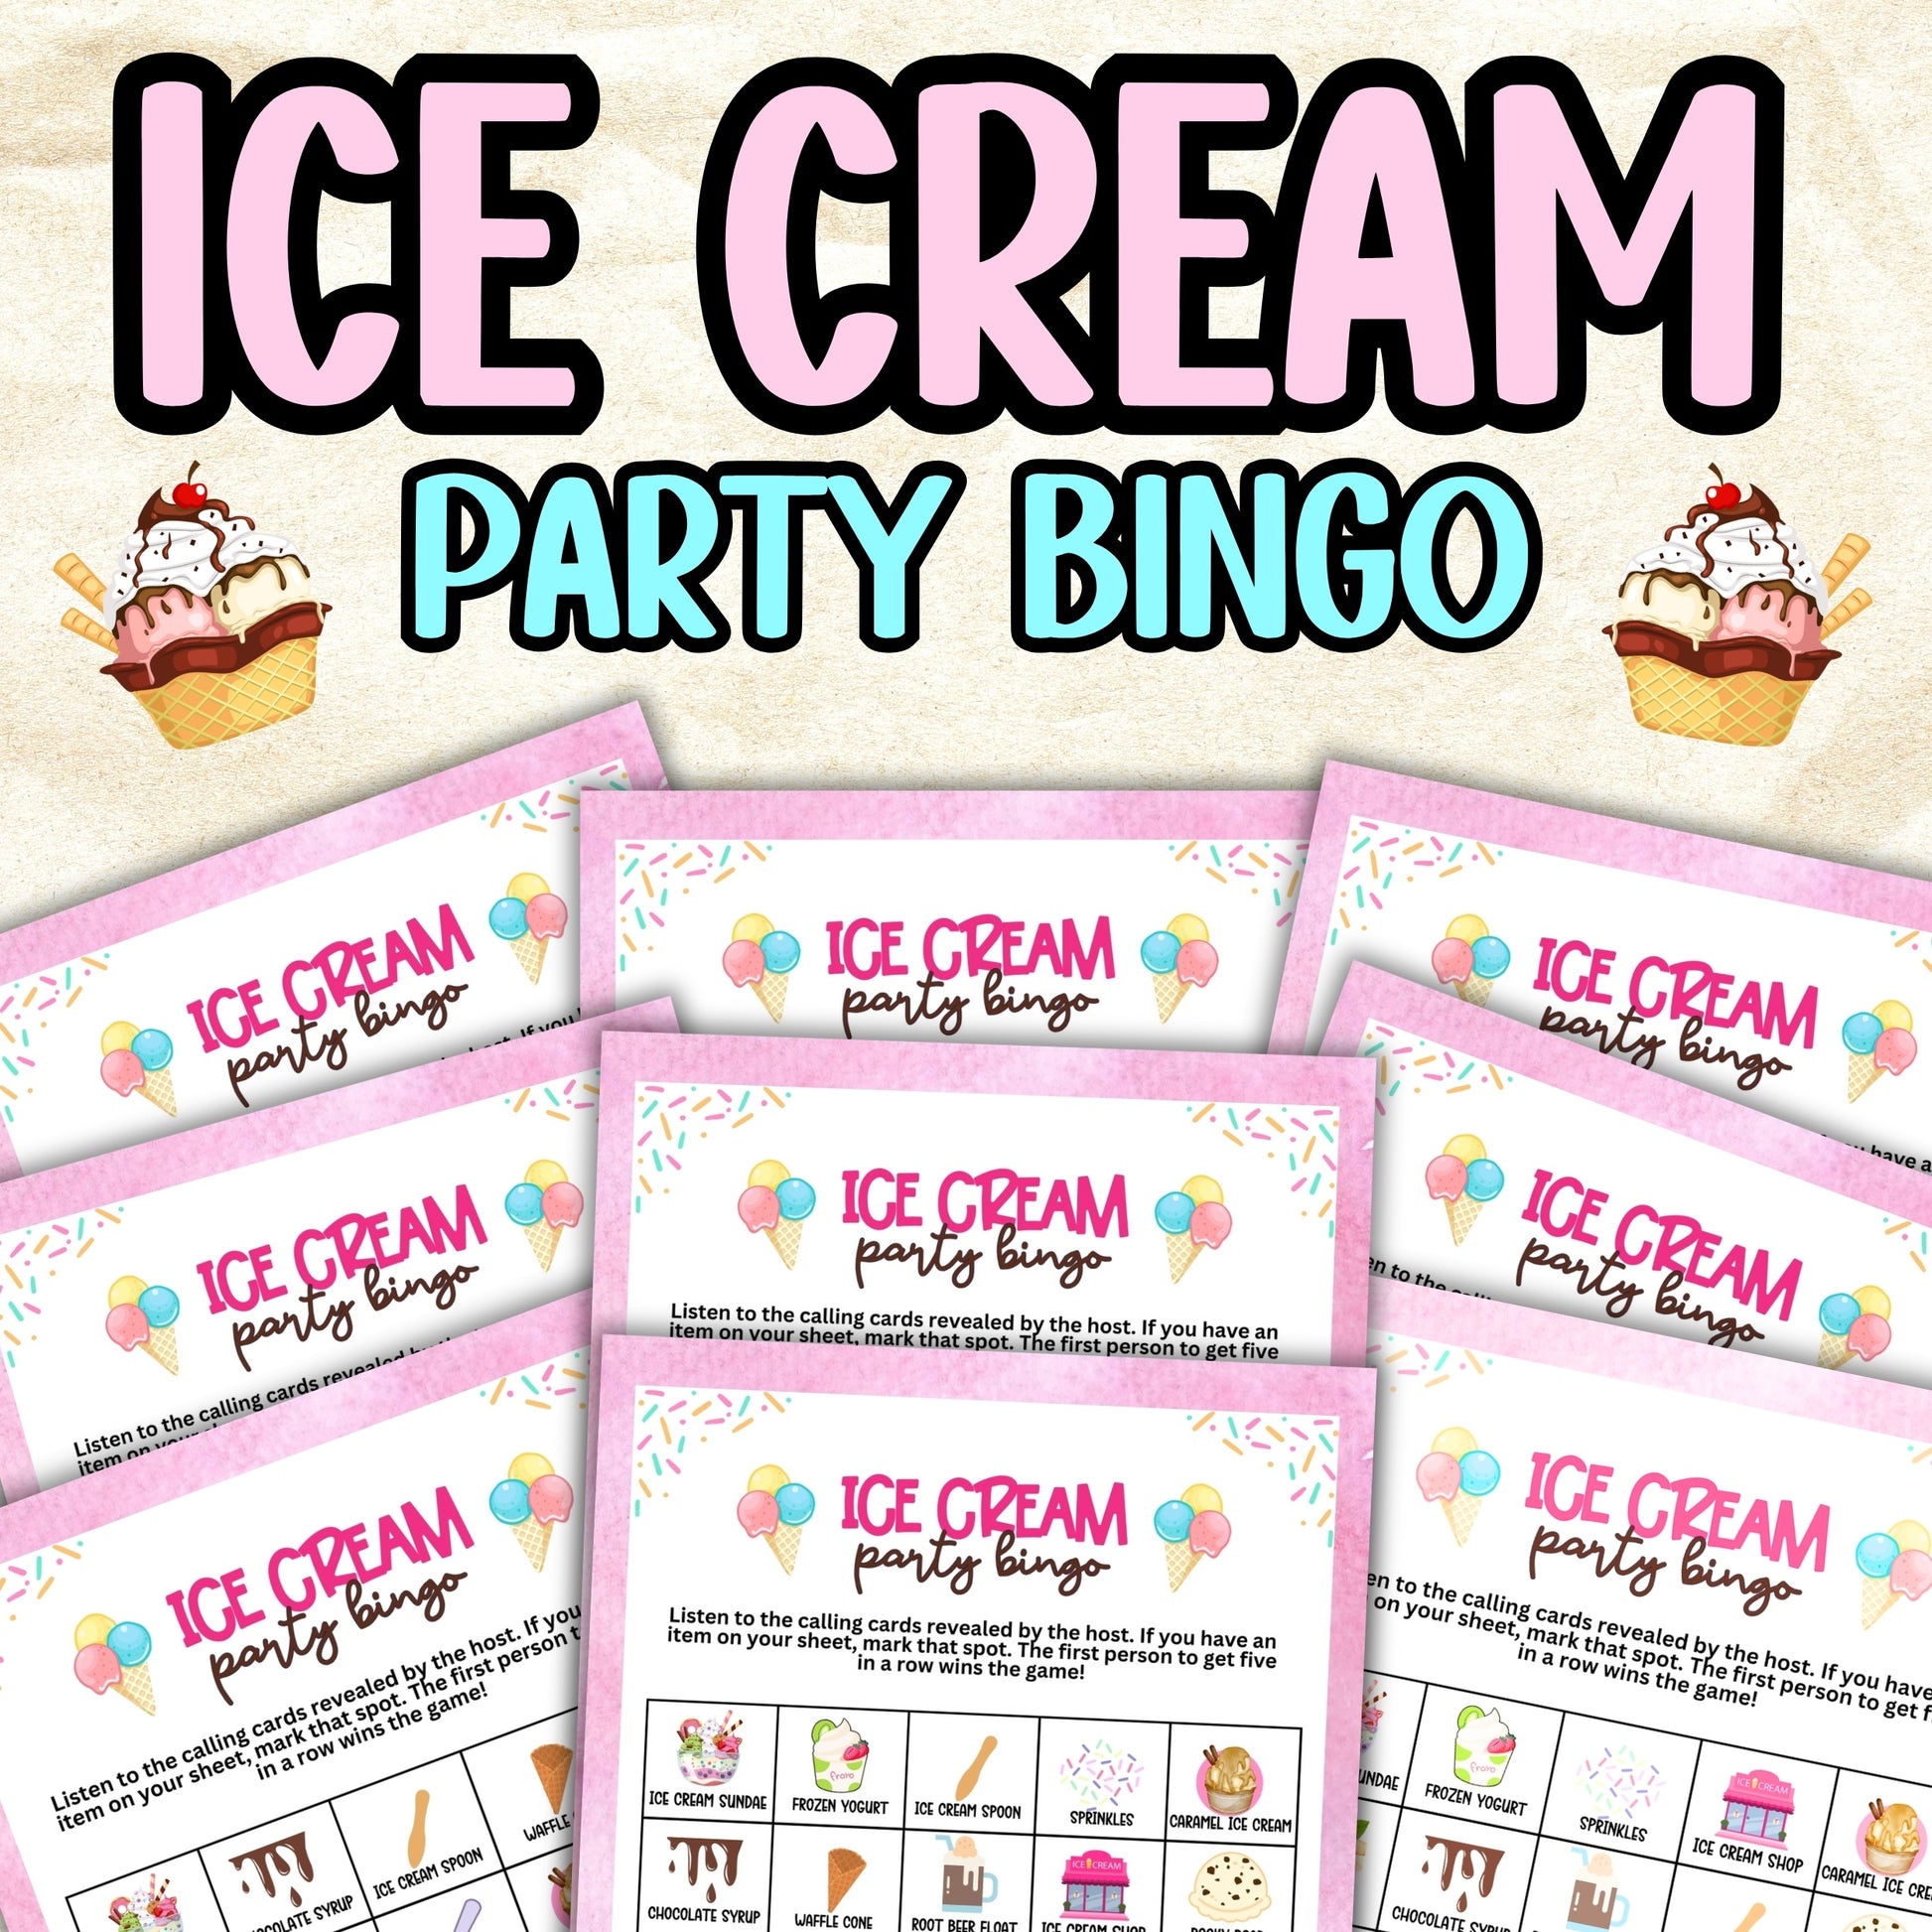 national ice cream month ice cream bingo